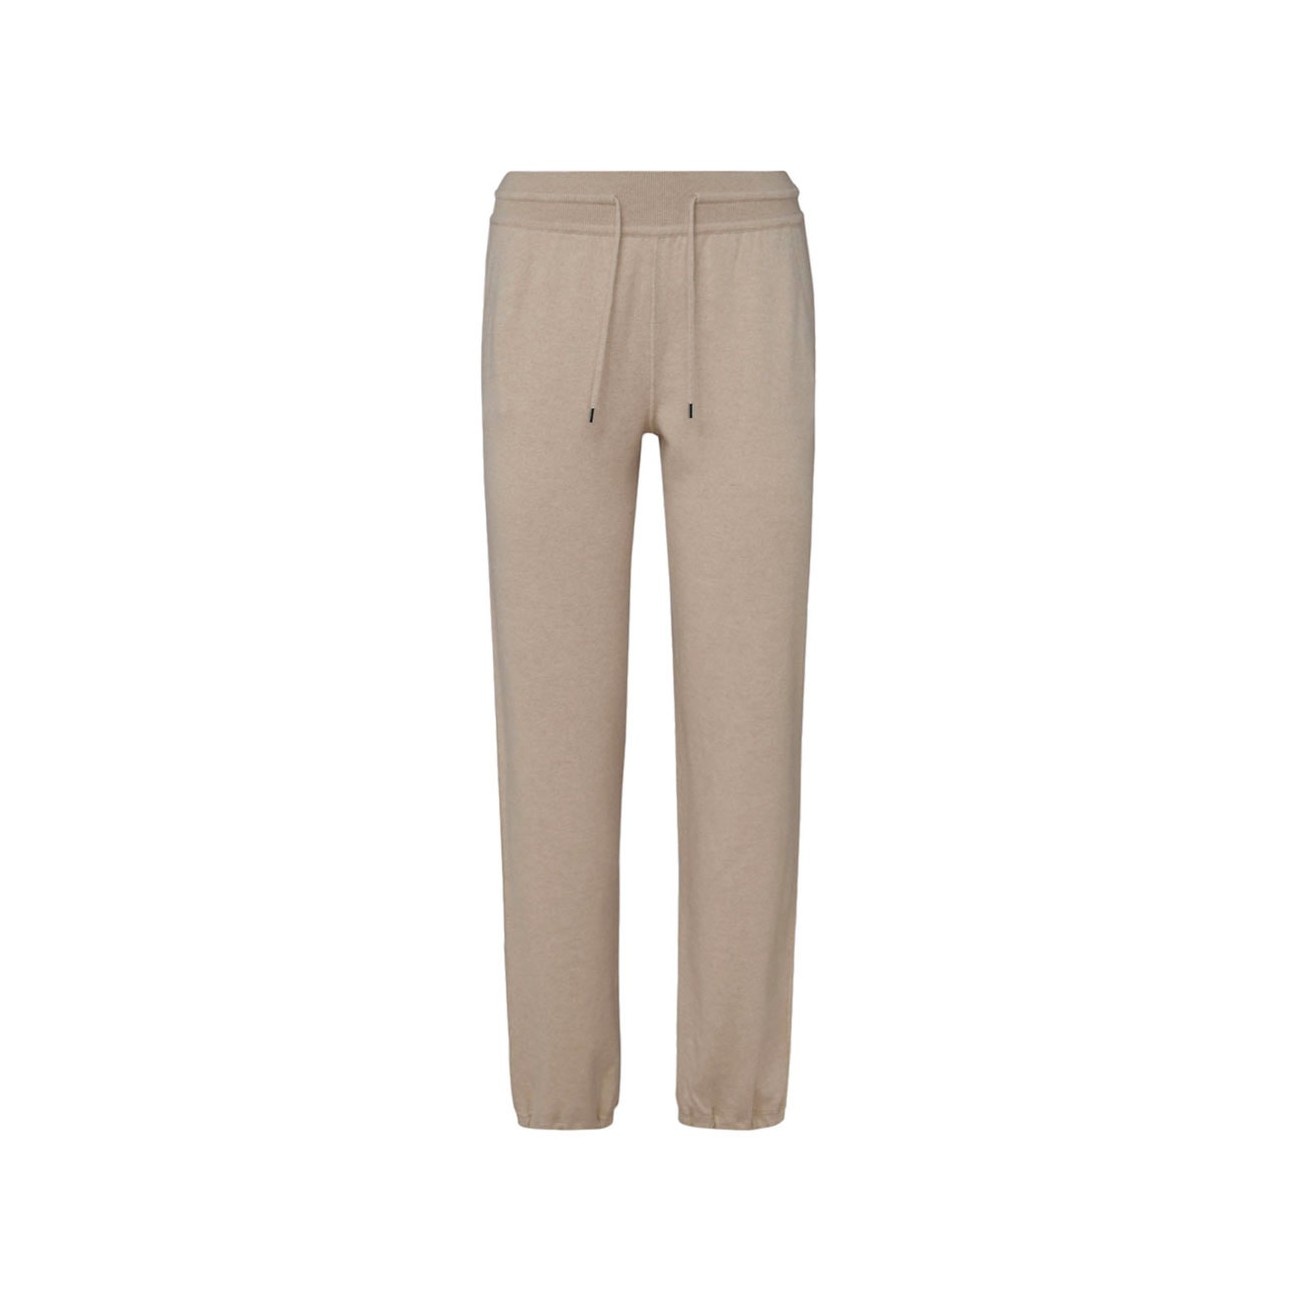 brown wool pants - 1